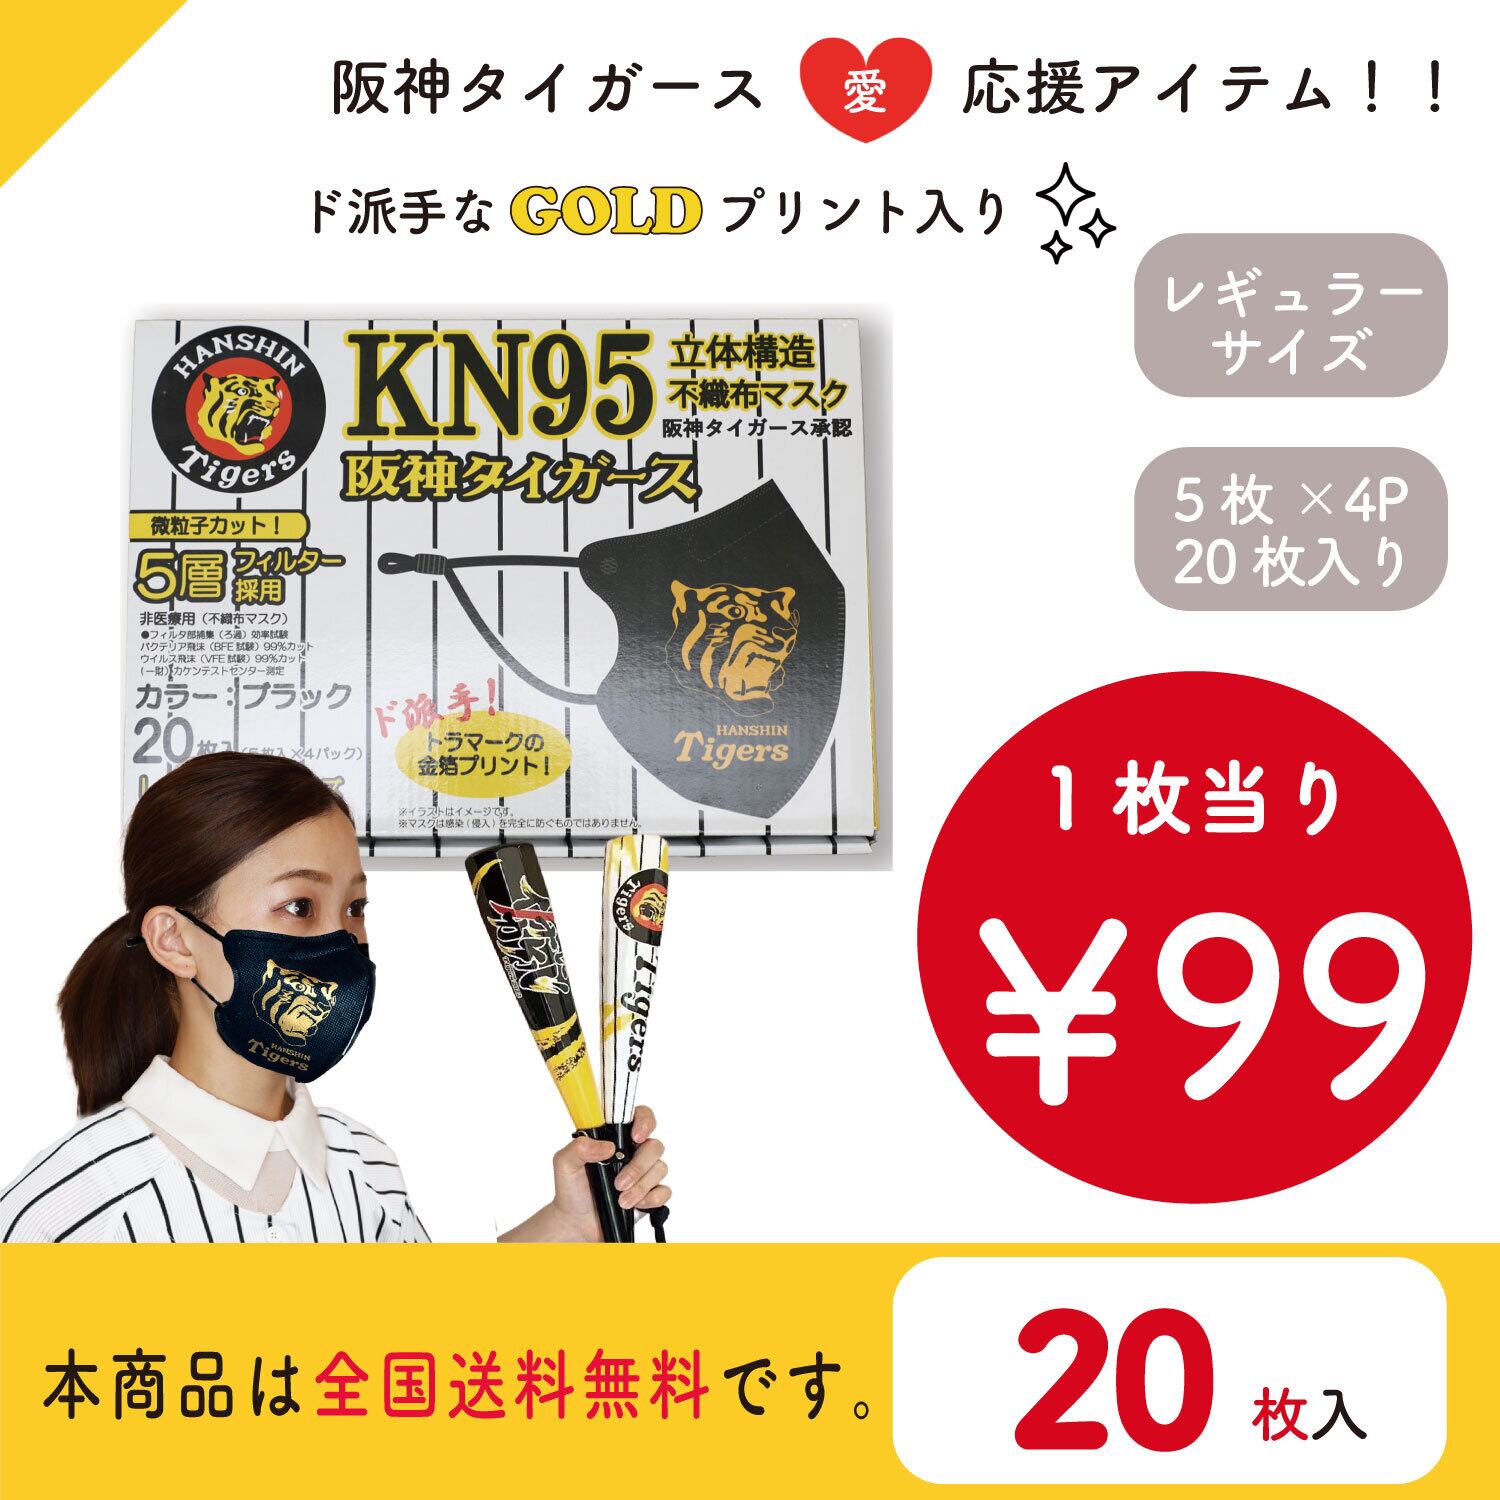 KN95阪神タイガースモデル『黒』